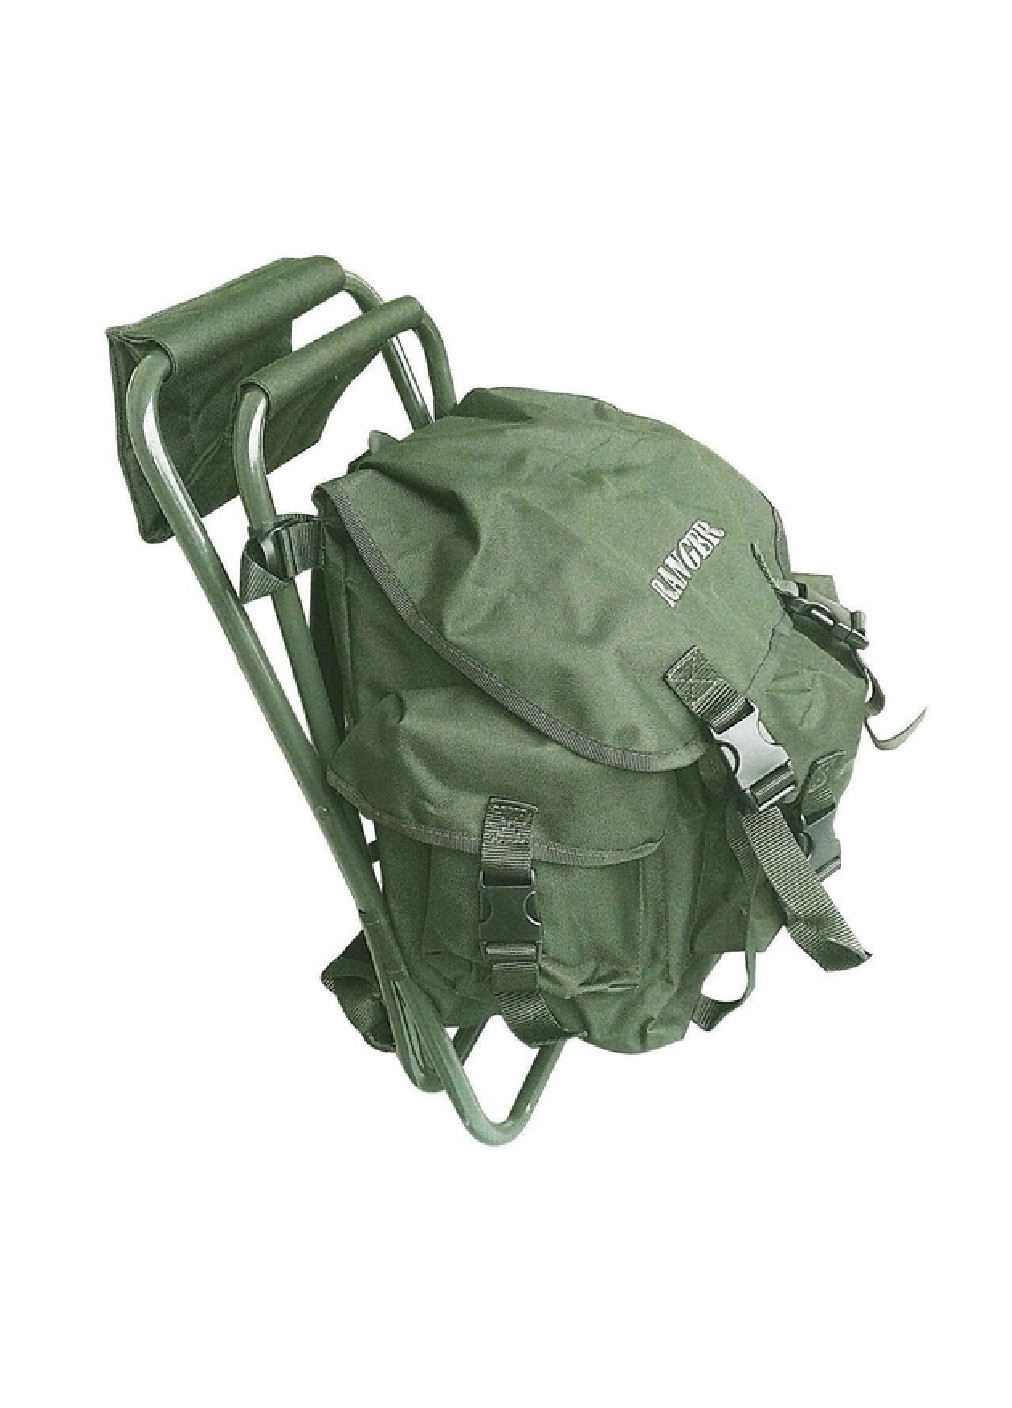 Розкладний компактний легкий стілець без спинки з рюкзаком для відпочинку дачі риболовлі туризму кемпінгу (475300-Prob) Зелений Unbranded (265391197)